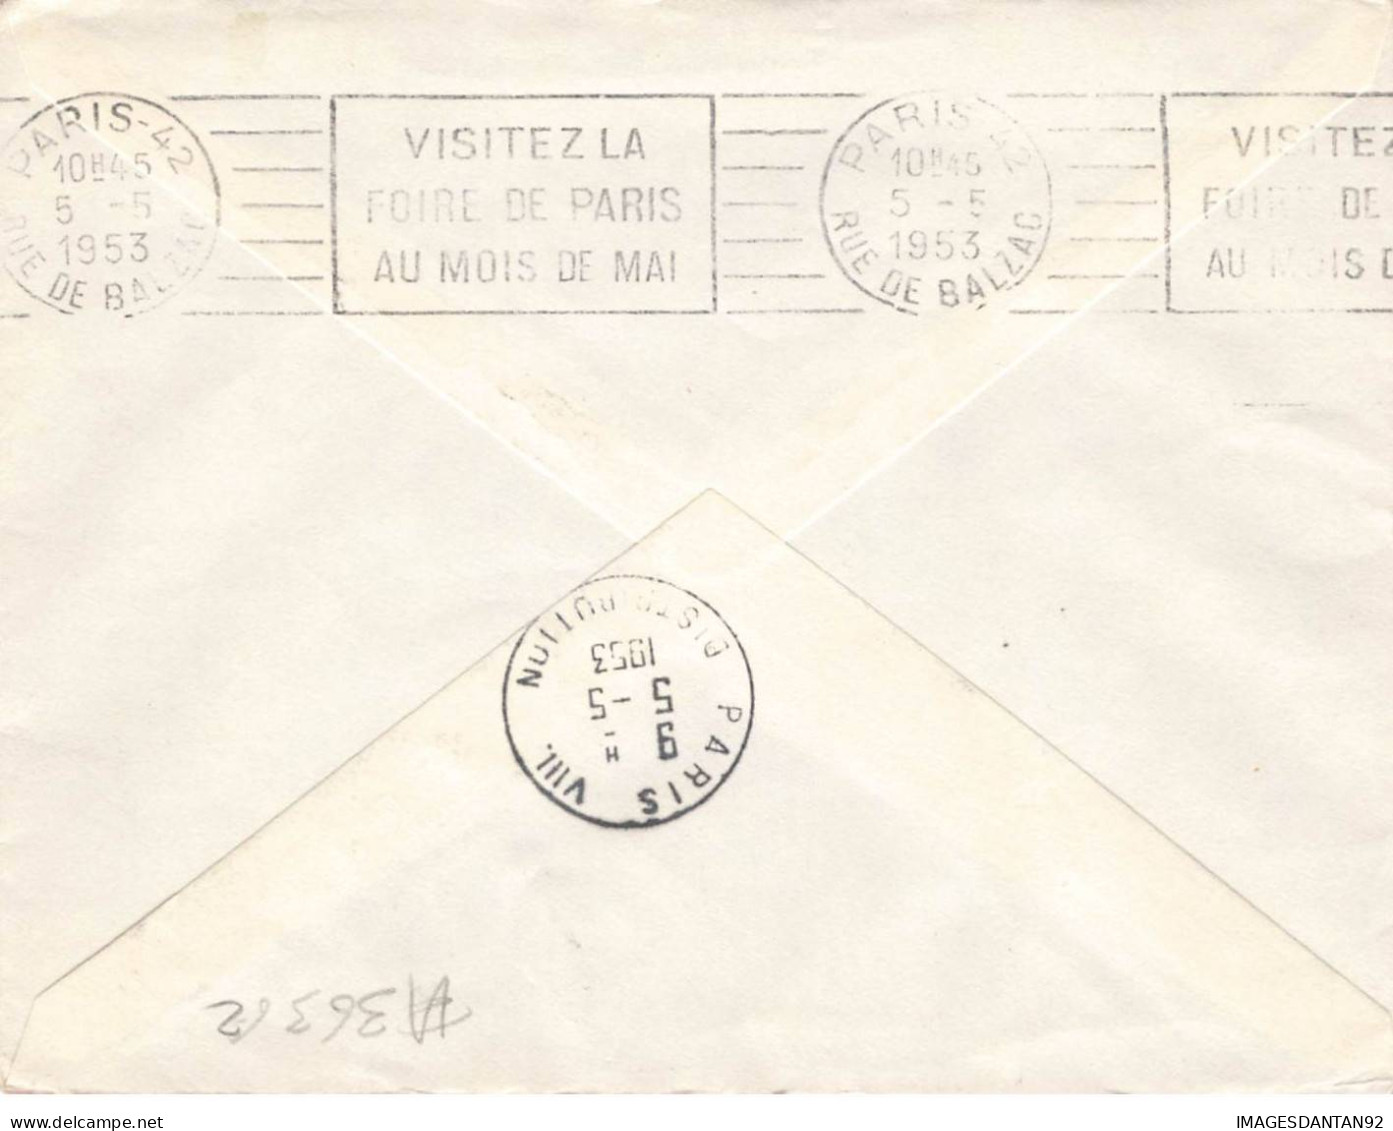 FRANCE #36362 1 ERE LIAISON AERIENNE DE NUIT MONTPELLIER PARIS 1953 - Lettres & Documents